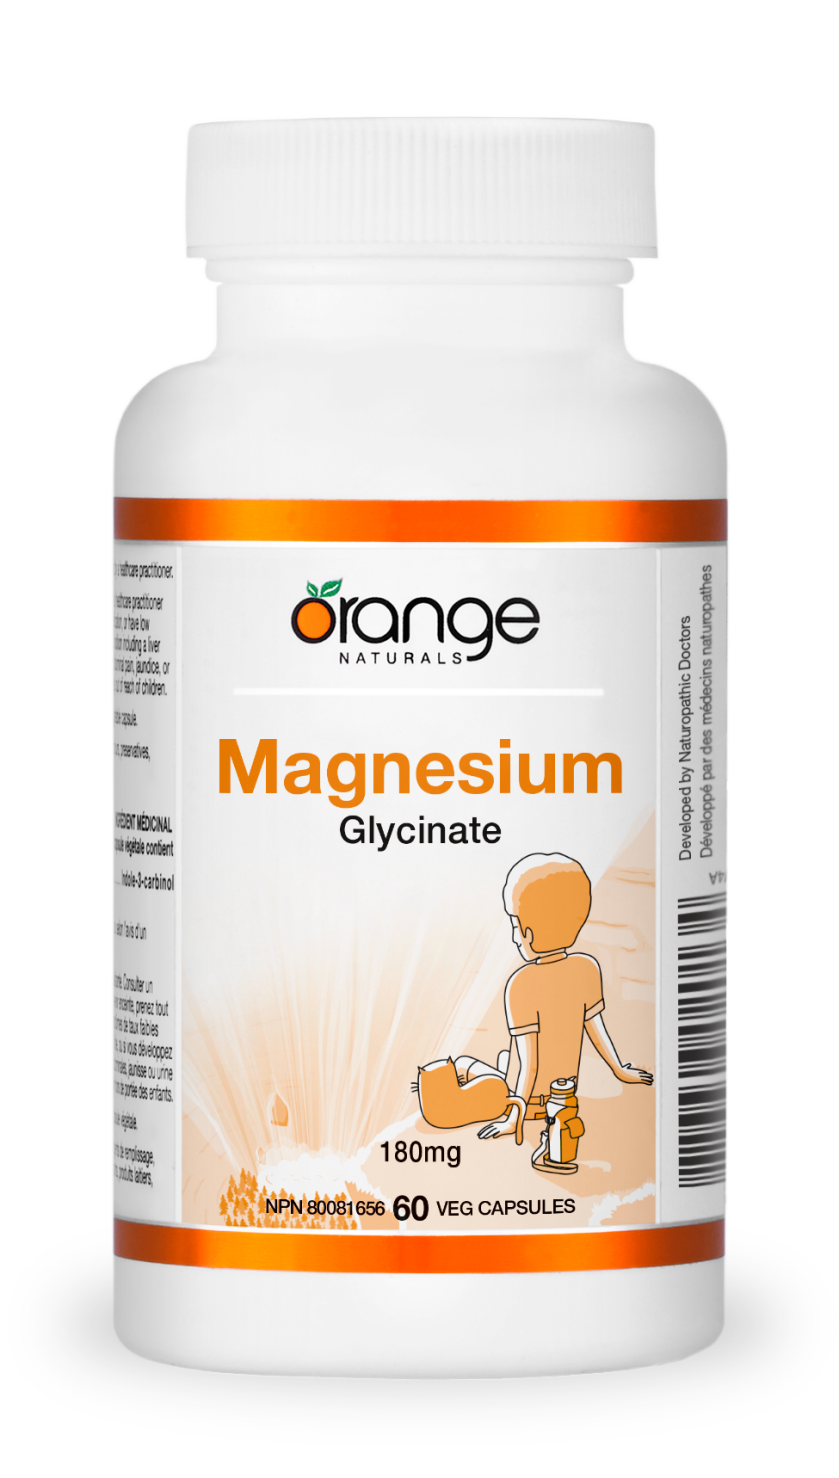 Orange Naturals Magnesium Glycinate 180mg (60 caps)